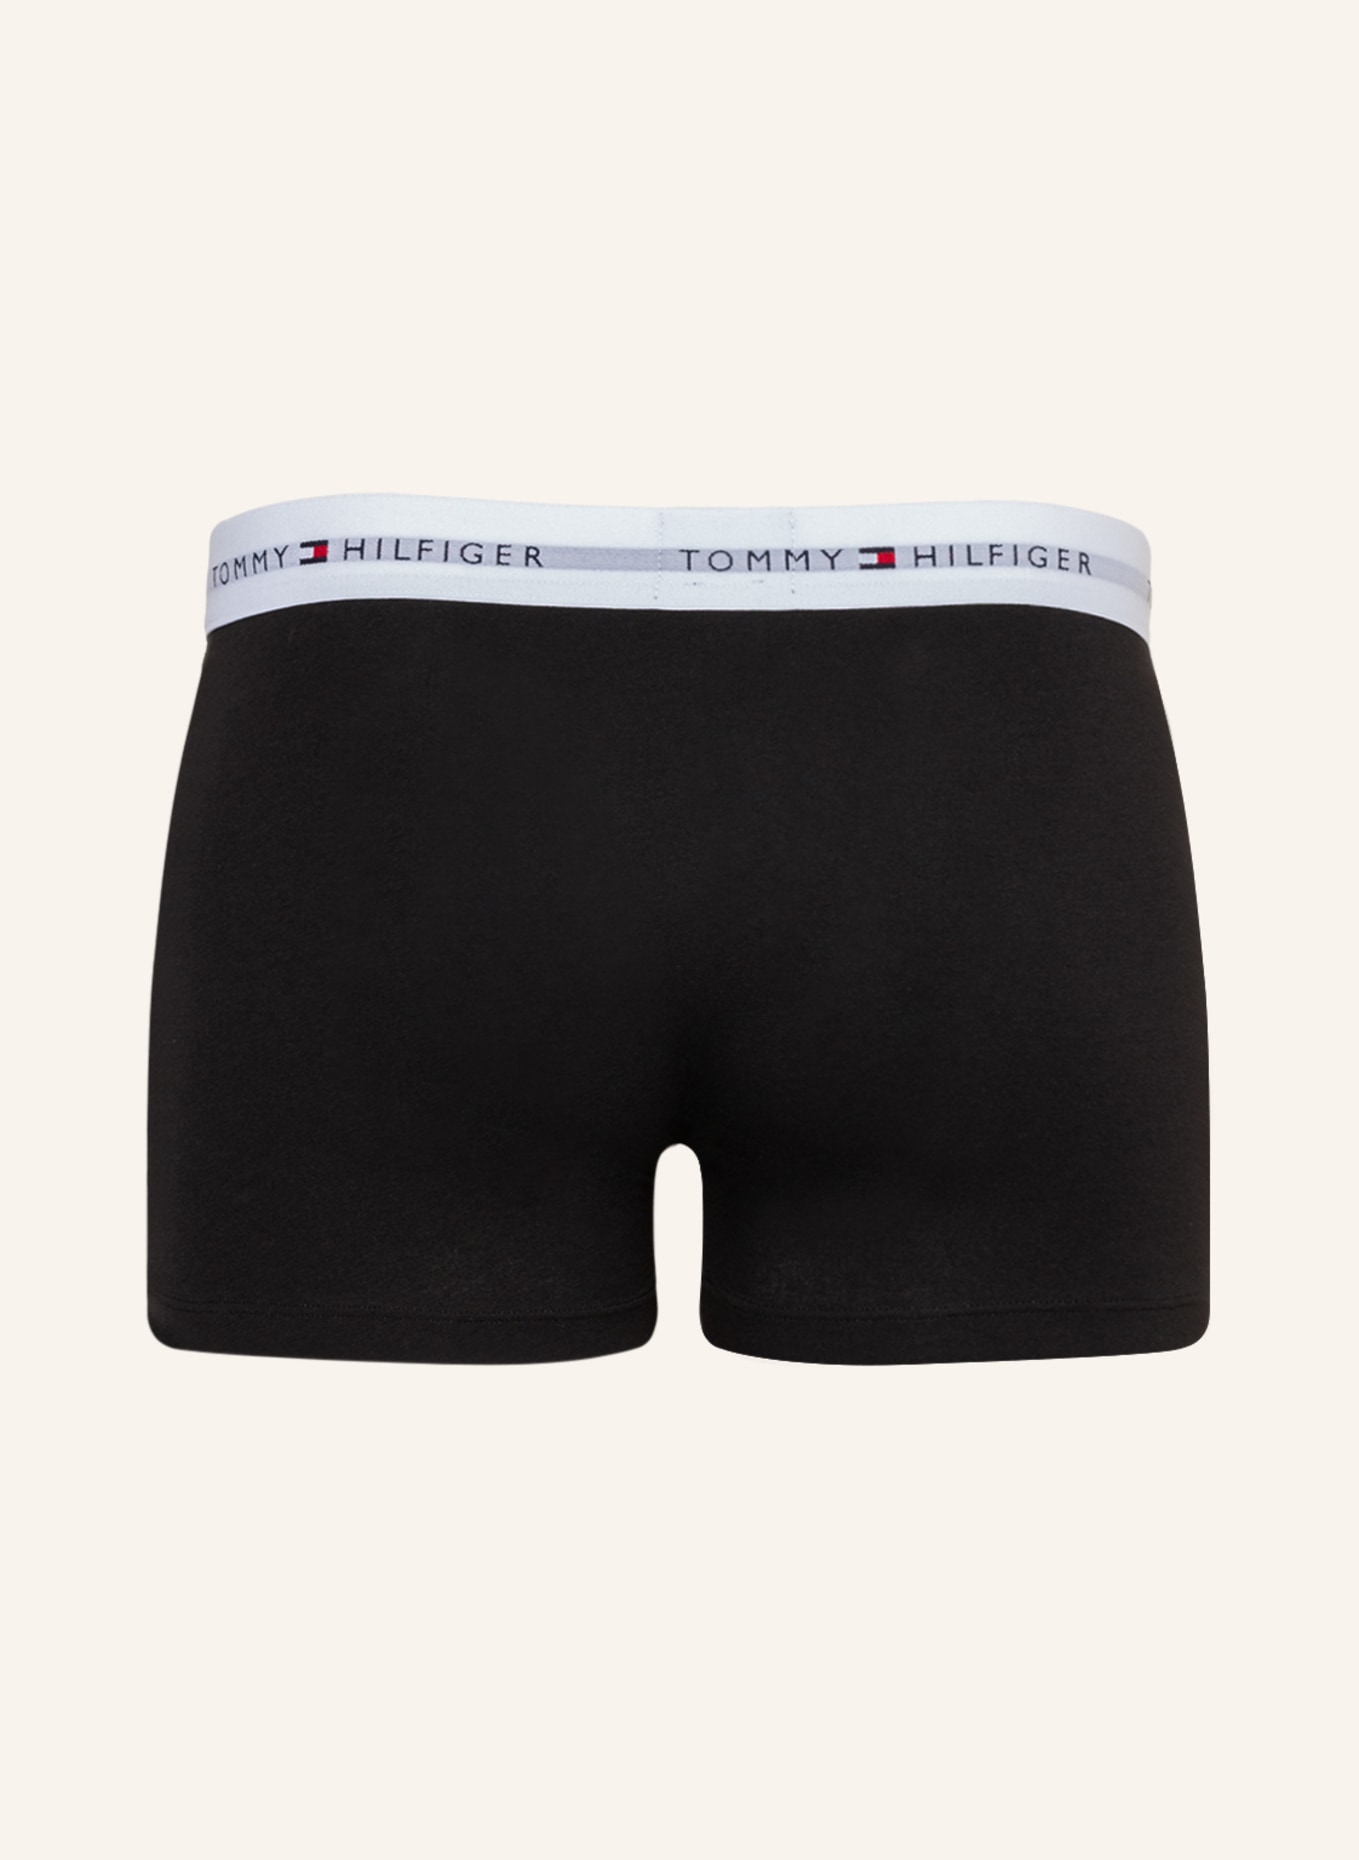 TOMMY HILFIGER 5-pack boxer shorts, Color: BLACK (Image 2)